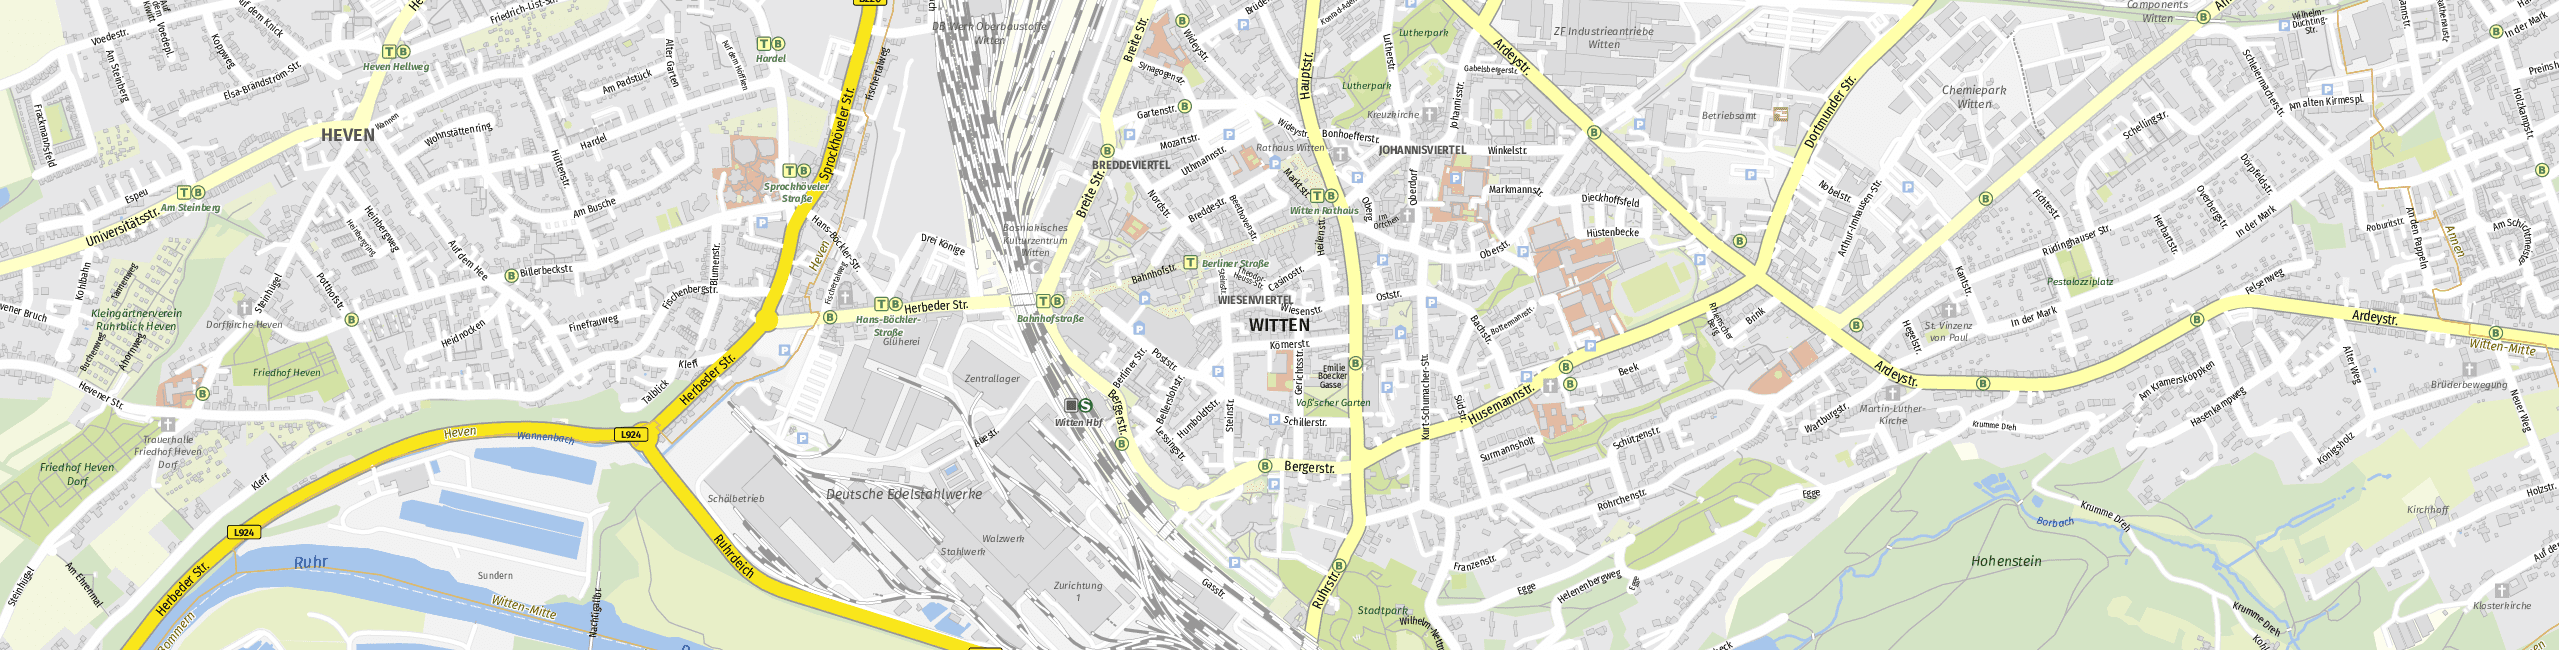 Stadtplan Witten zum Downloaden.